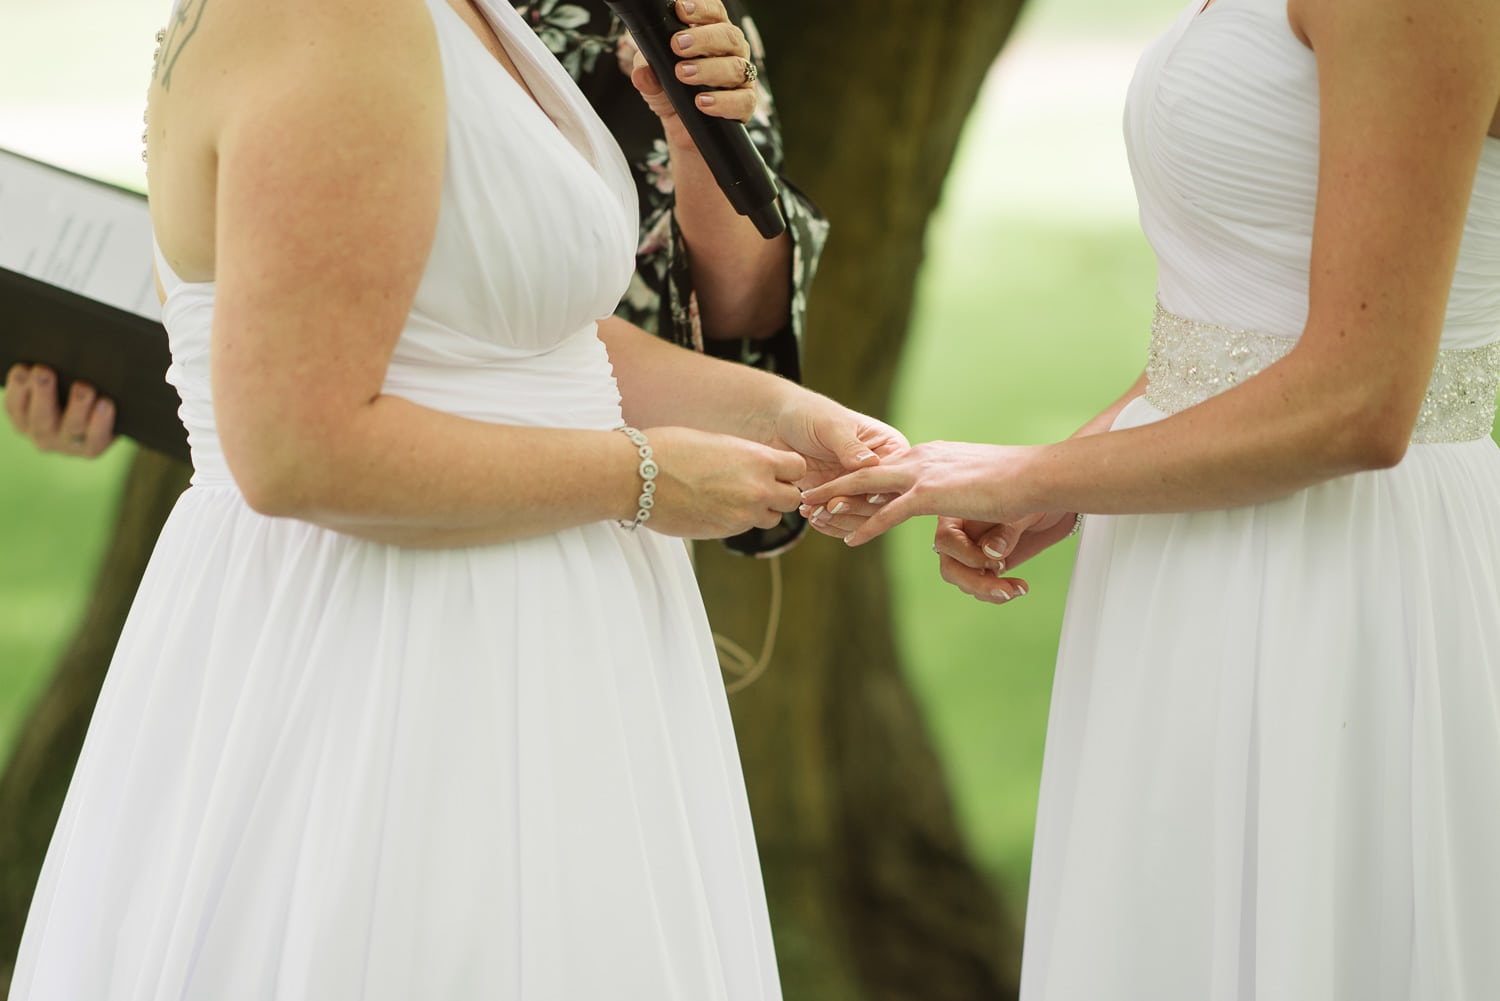 brides exchanging rings